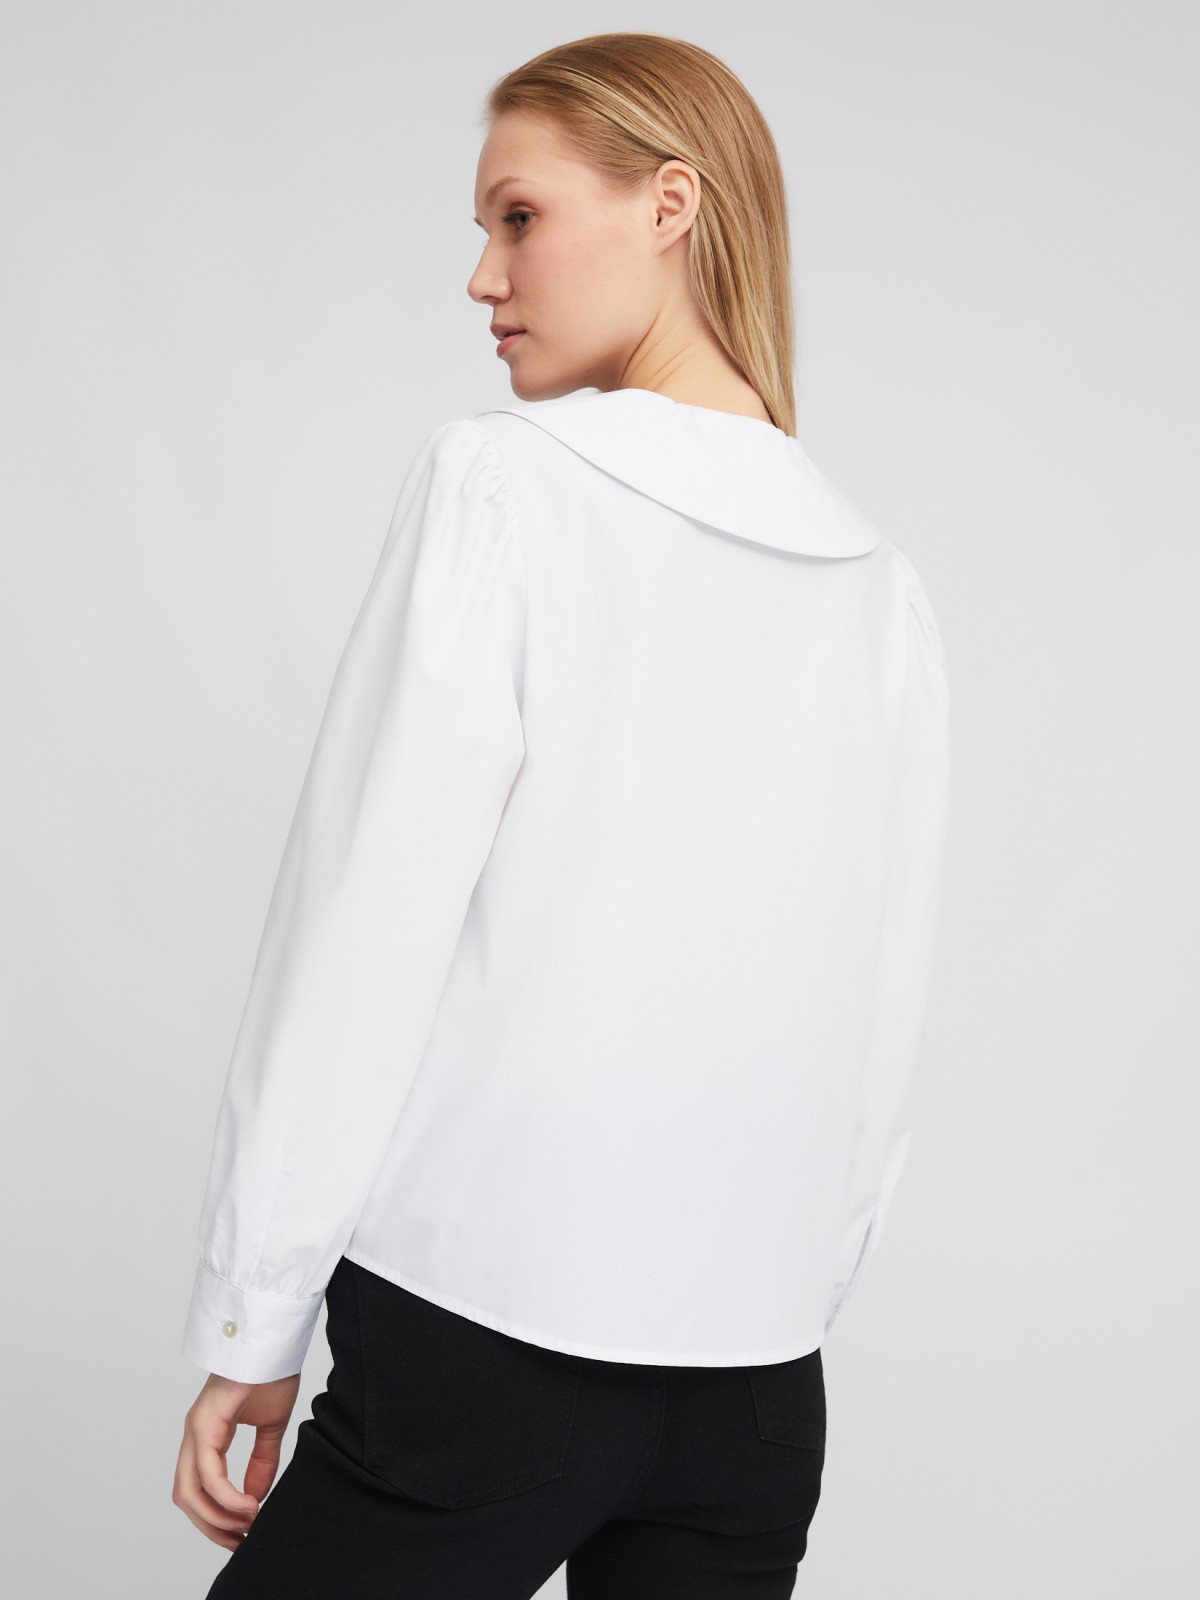 Блузка-рубашка с акцентным воротником и объёмными рукавами zolla 02411117Y593, цвет белый, размер XS - фото 5